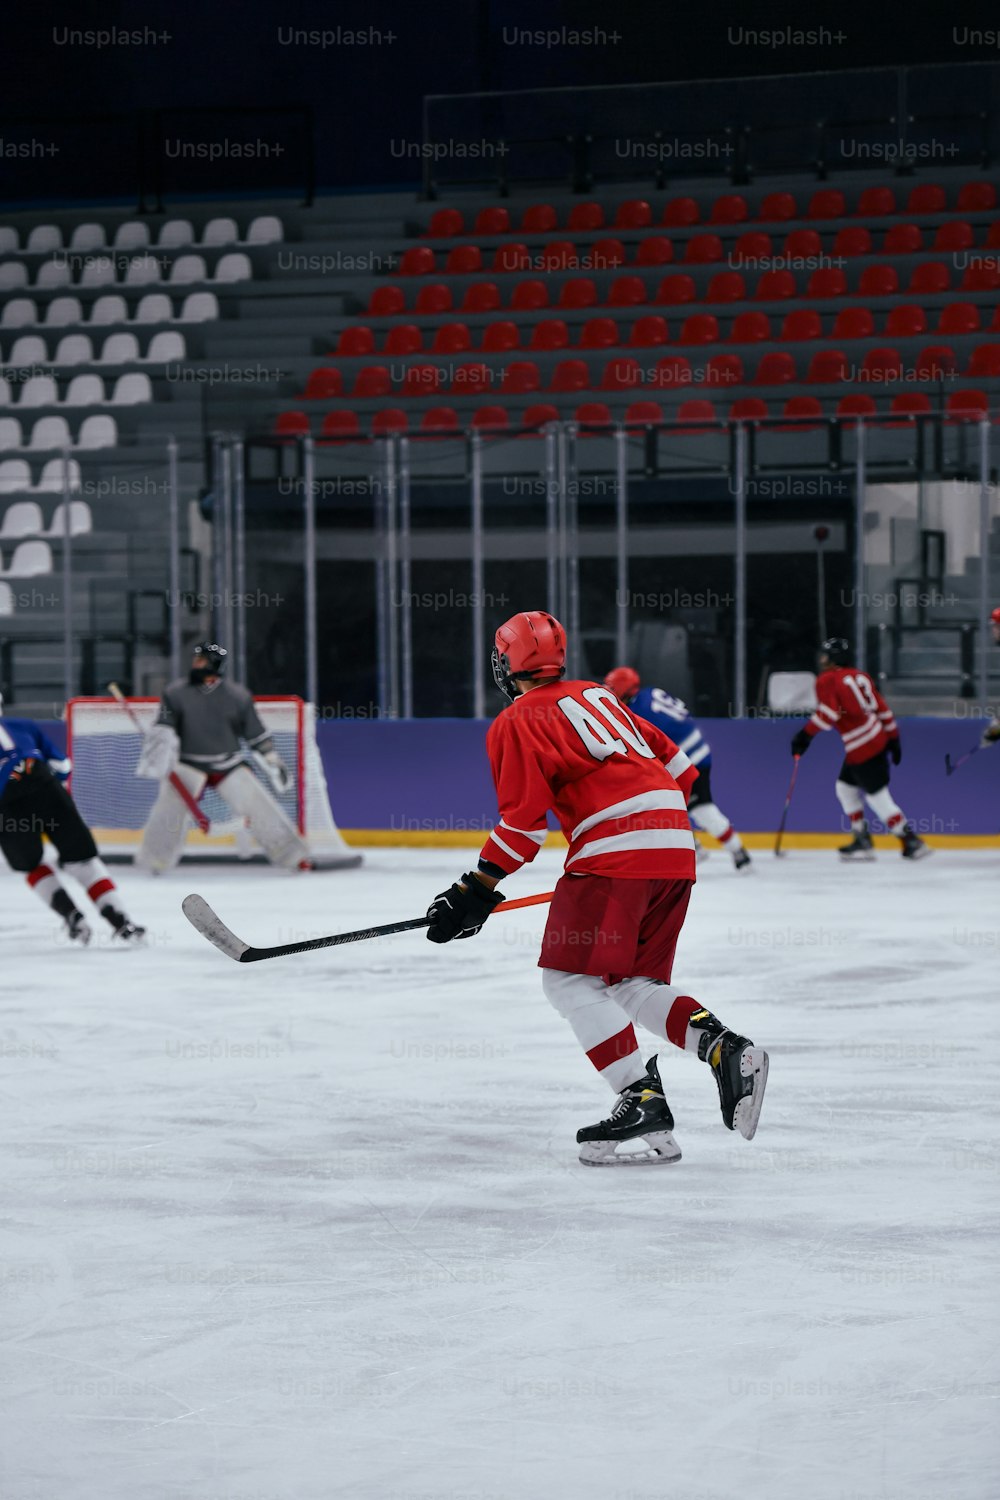 Un gruppo di persone che giocano una partita di hockey su ghiaccio